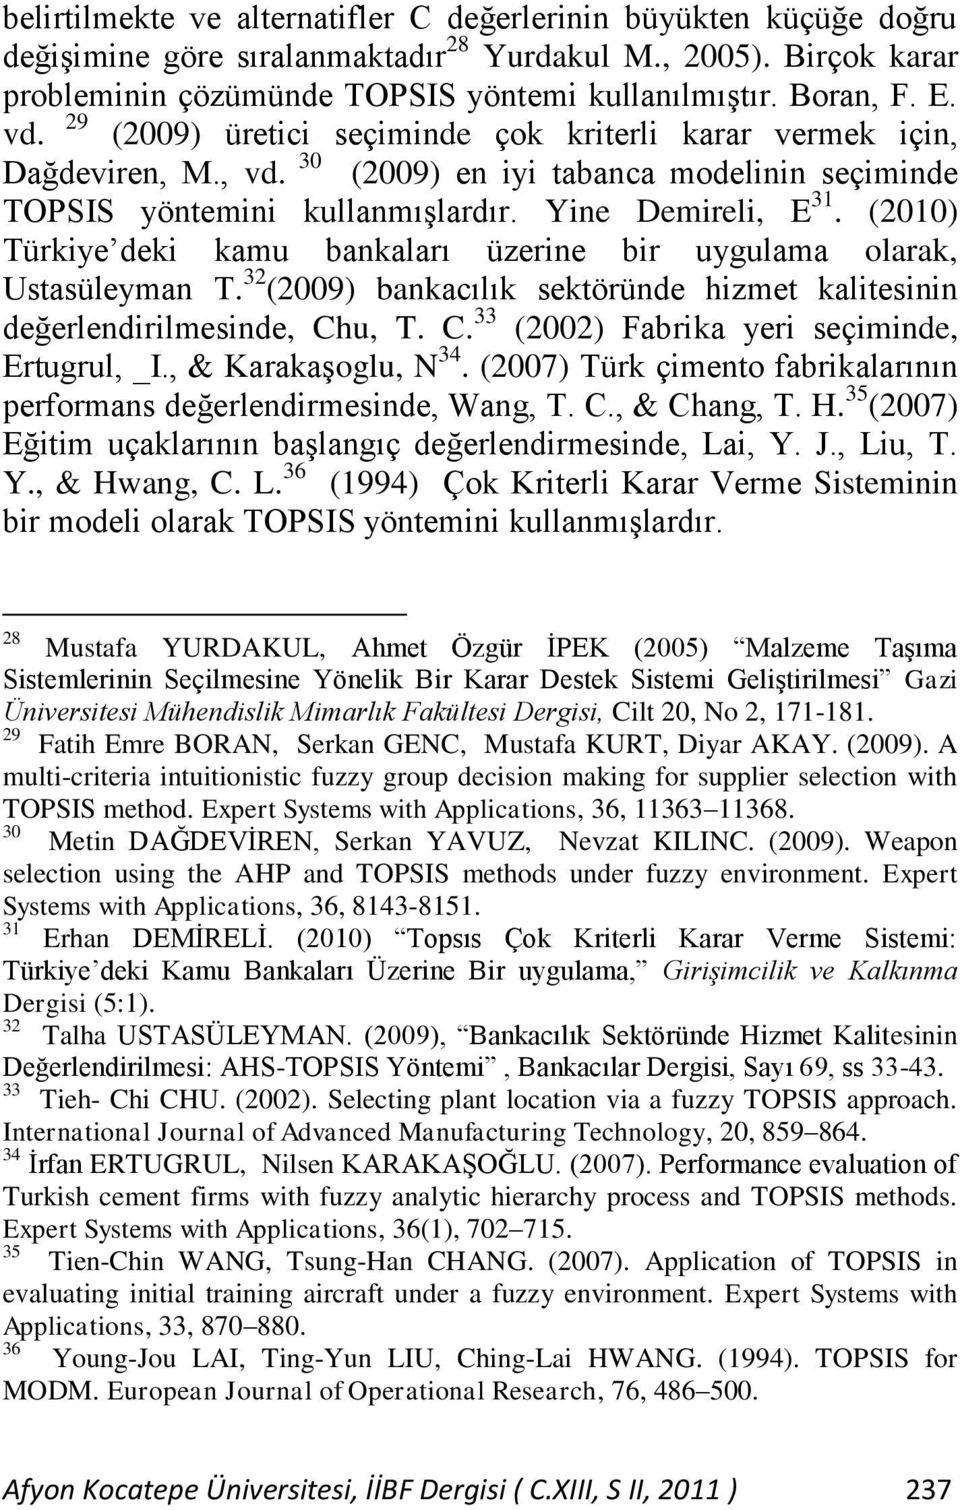 (2010) Türkiye deki kamu bankaları üzerine bir uygulama olarak, Ustasüleyman T. 32 (2009) bankacılık sektöründe hizmet kalitesinin değerlendirilmesinde, Ch